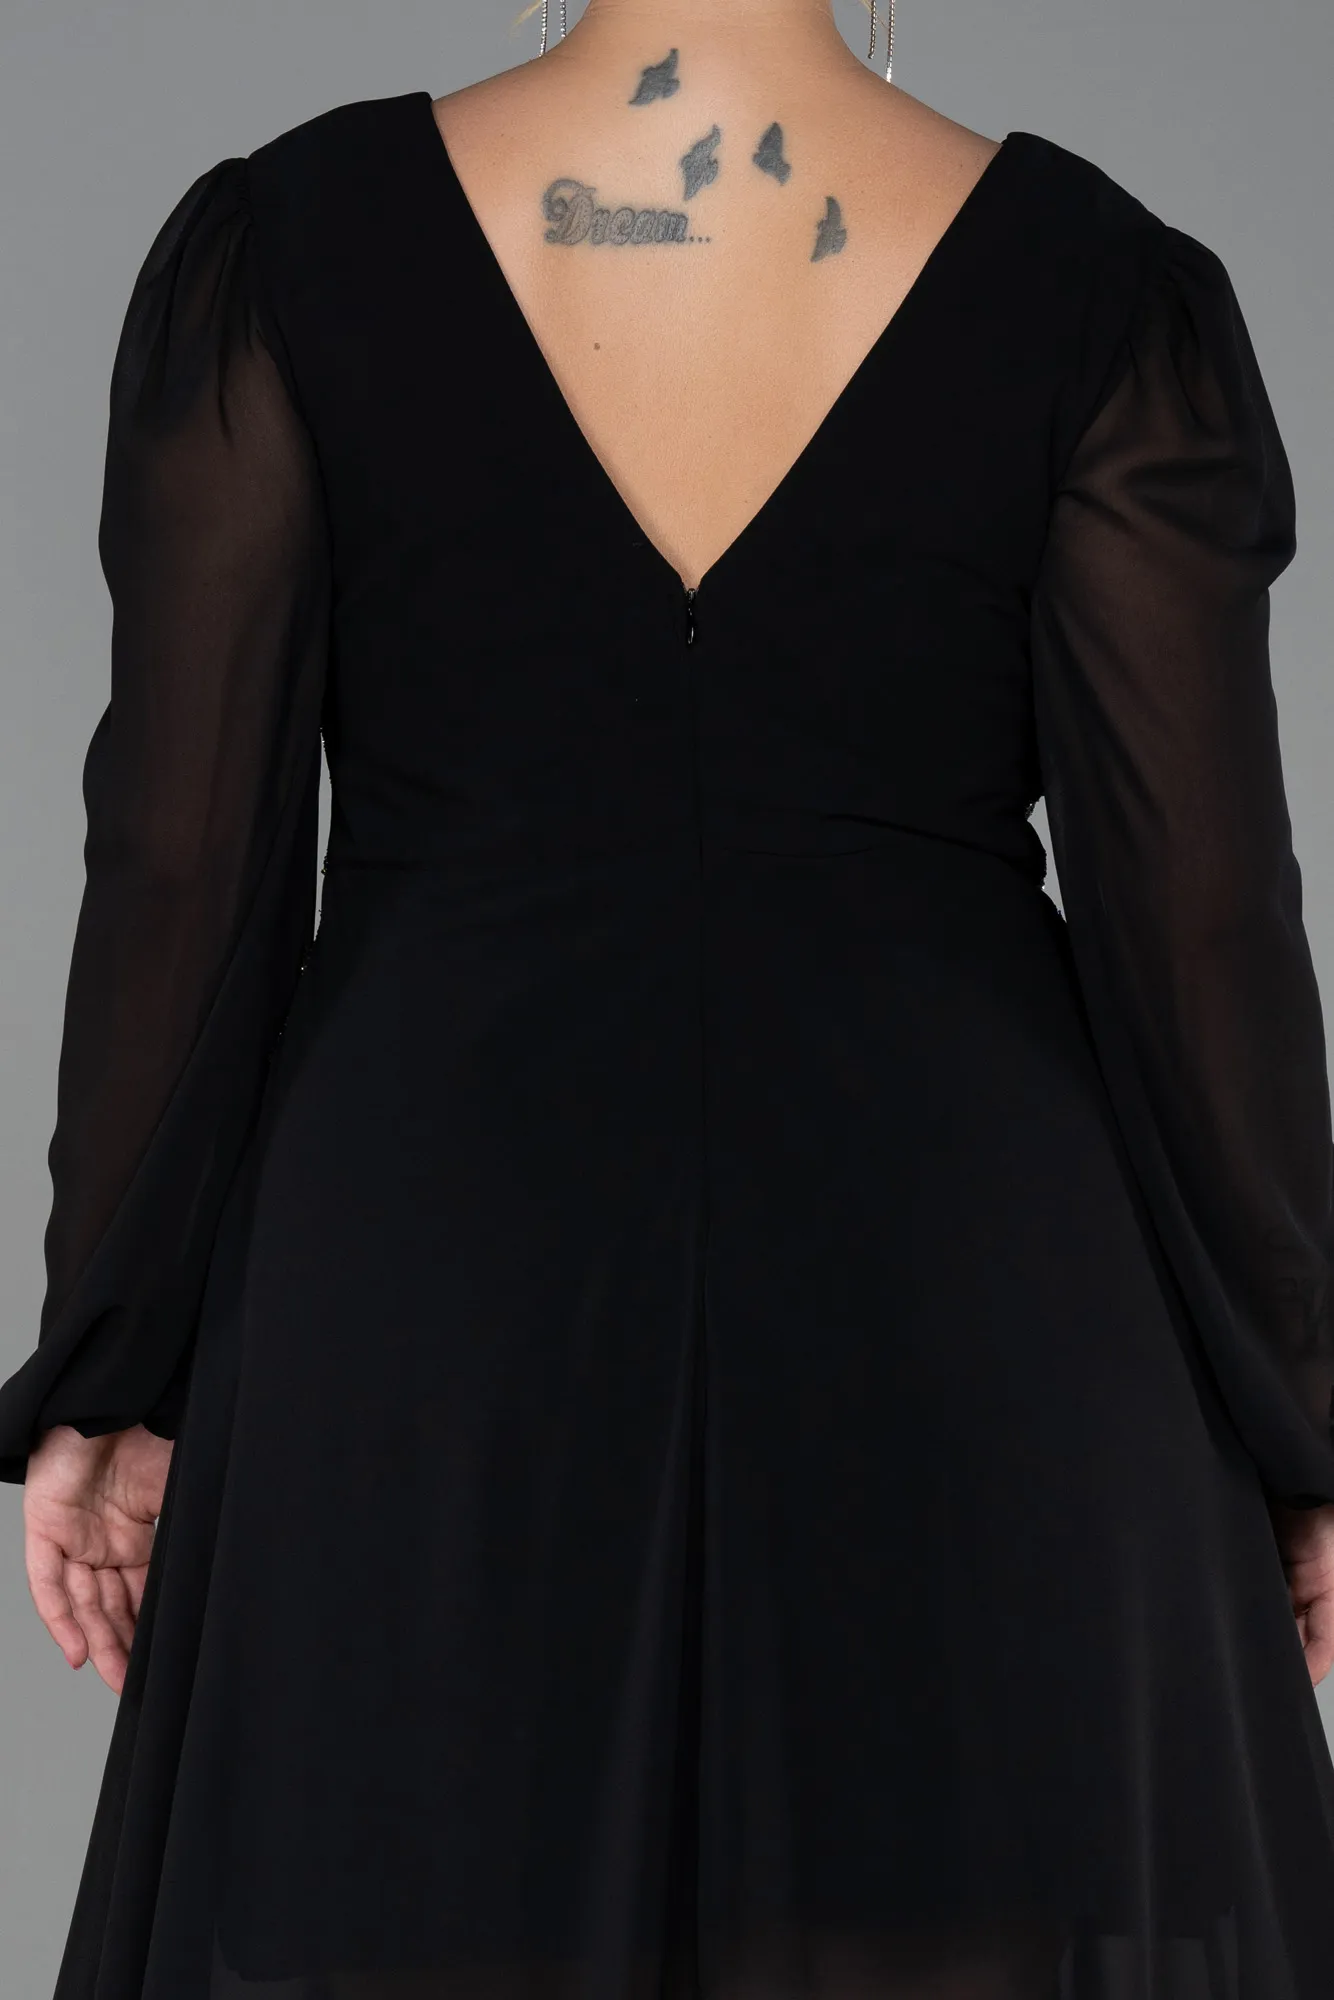 Black-Long Chiffon Plus Size Evening Dress ABU3256